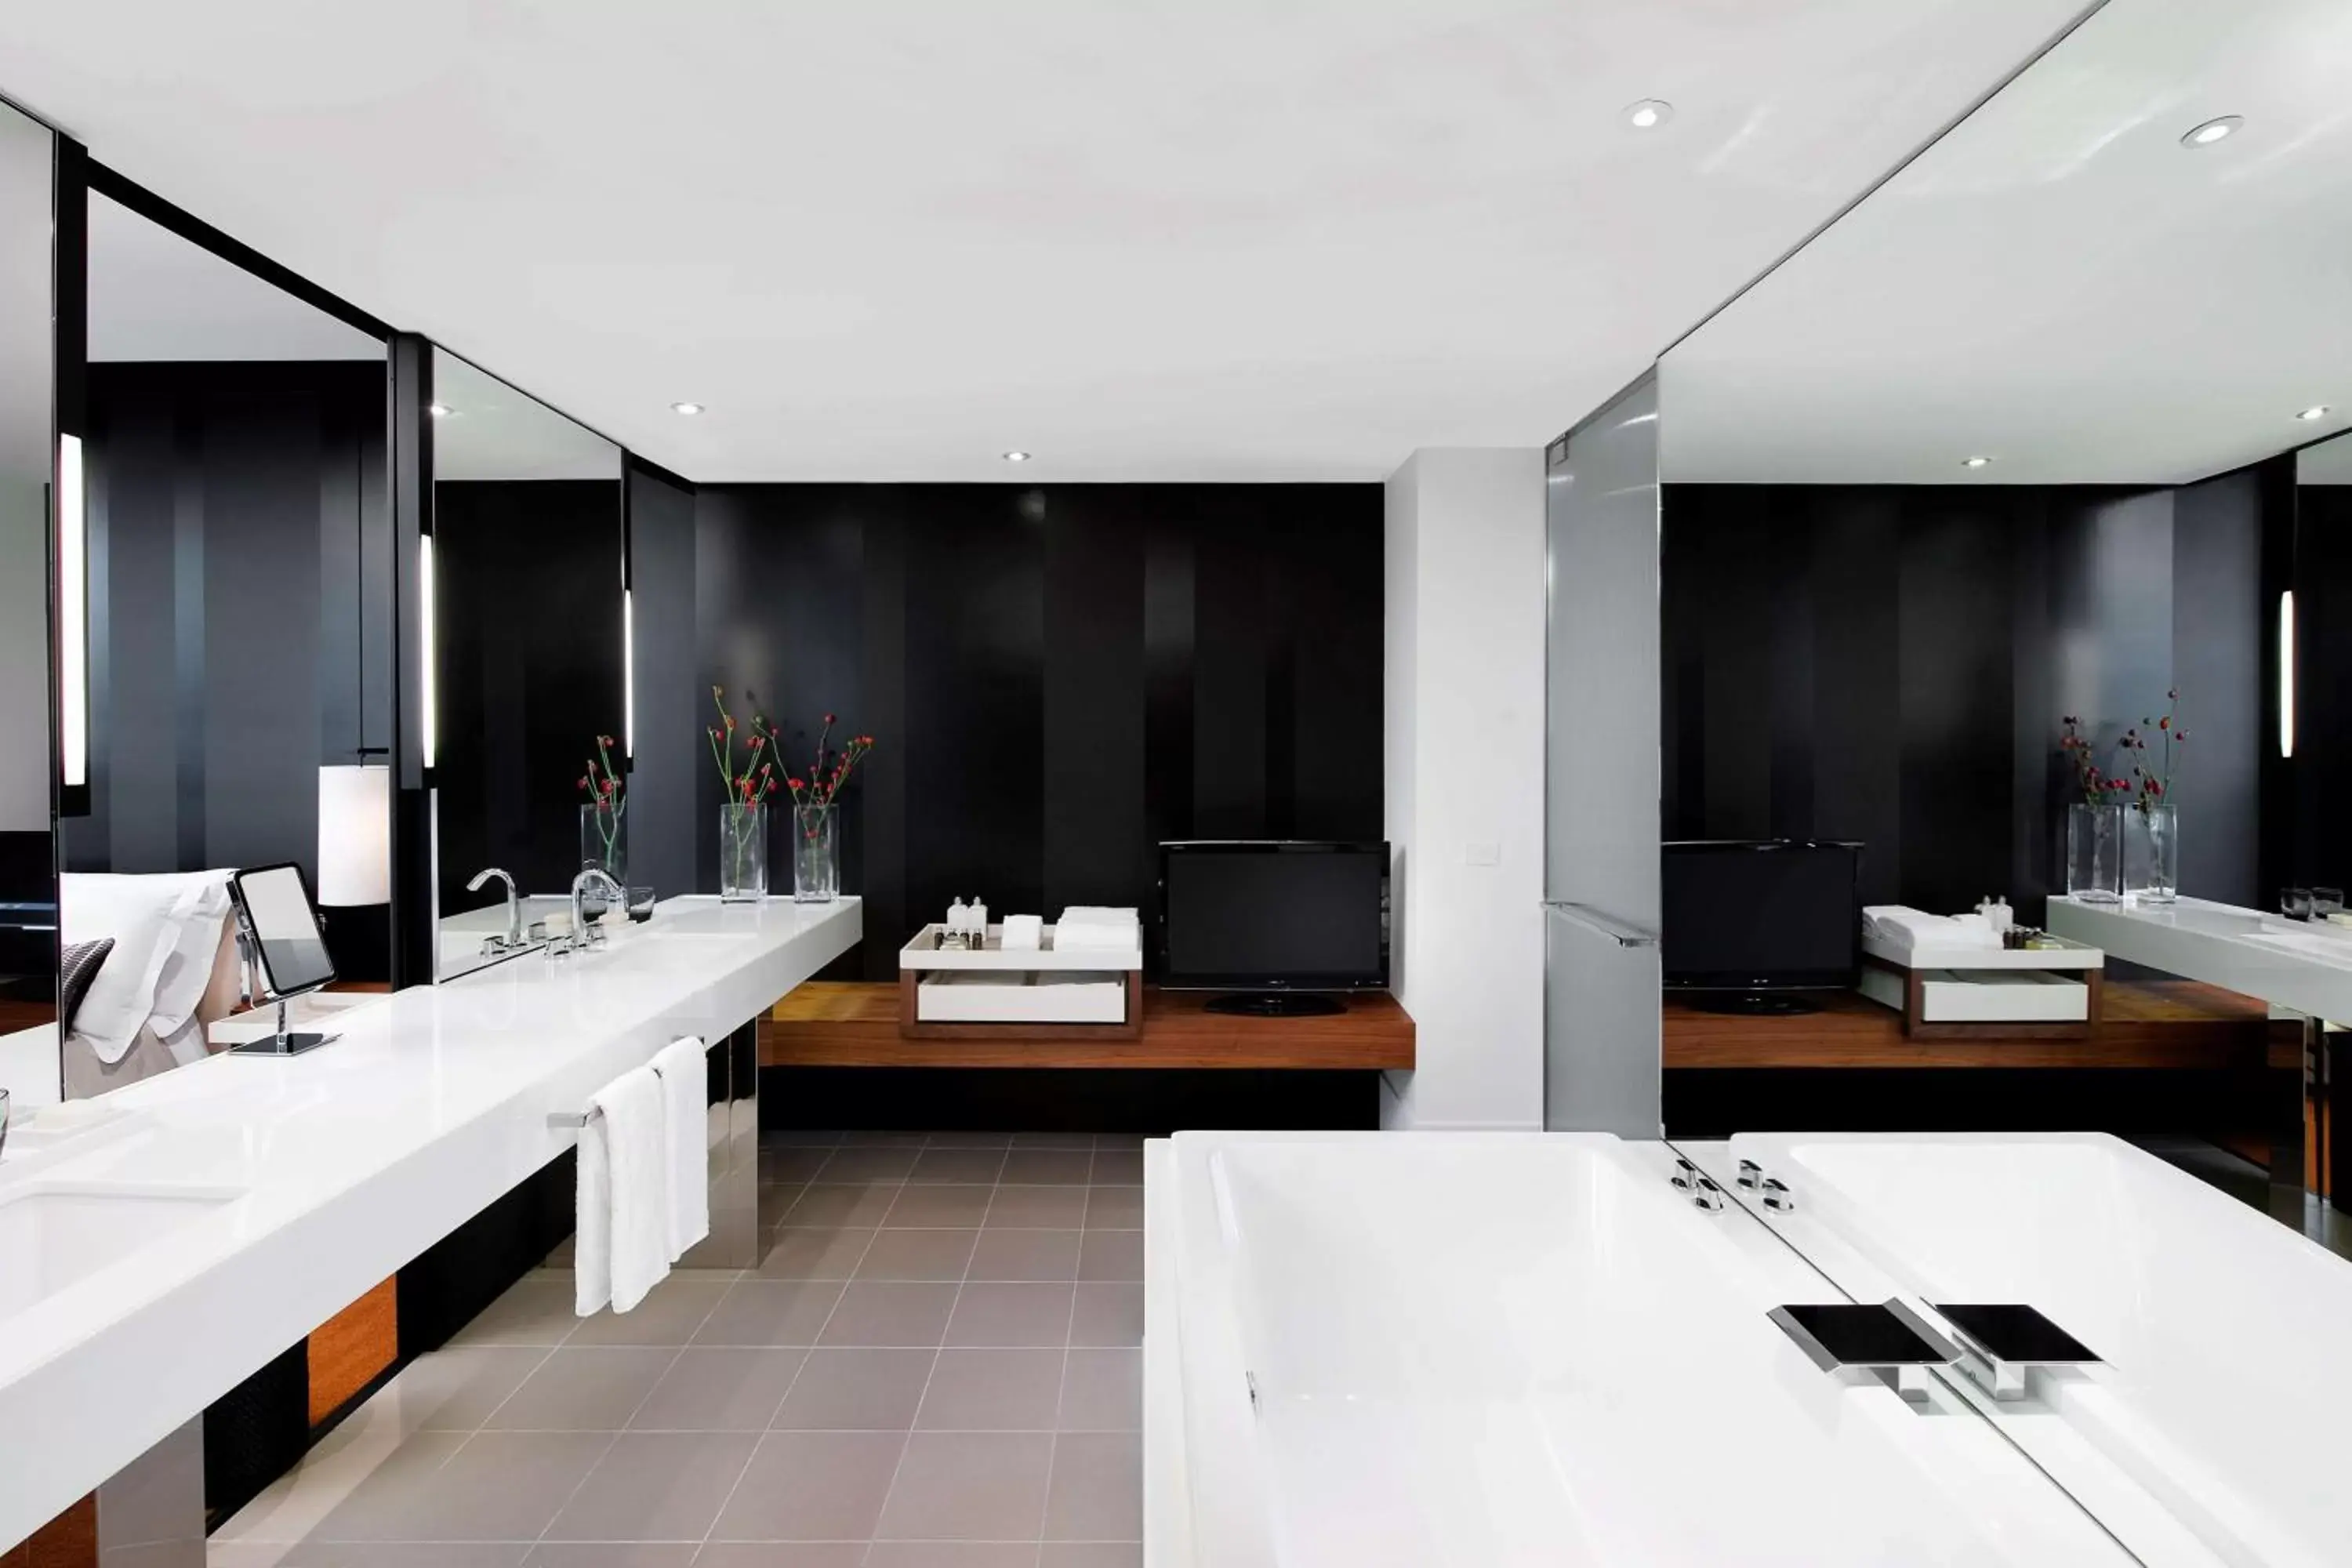 Bathroom in Crown Metropol Melbourne